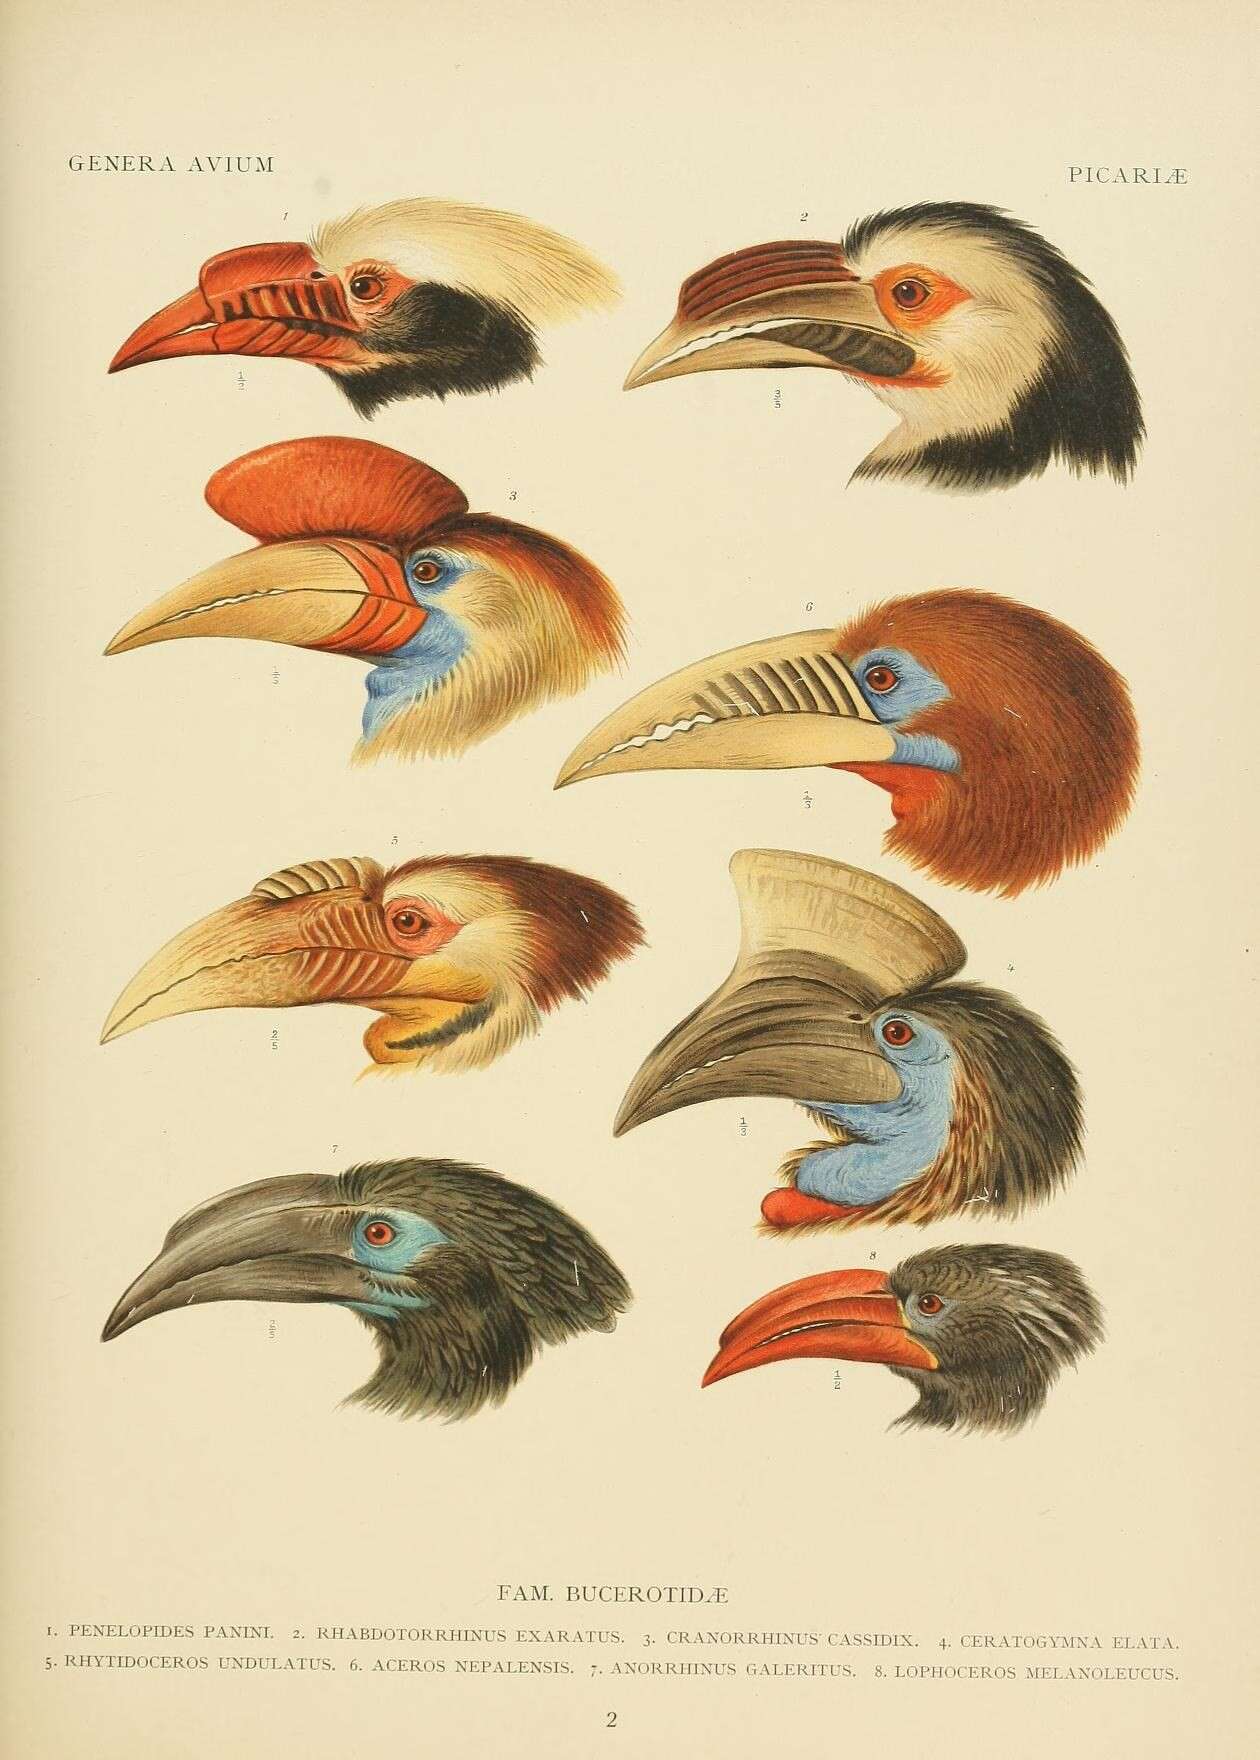 Image of hornbills